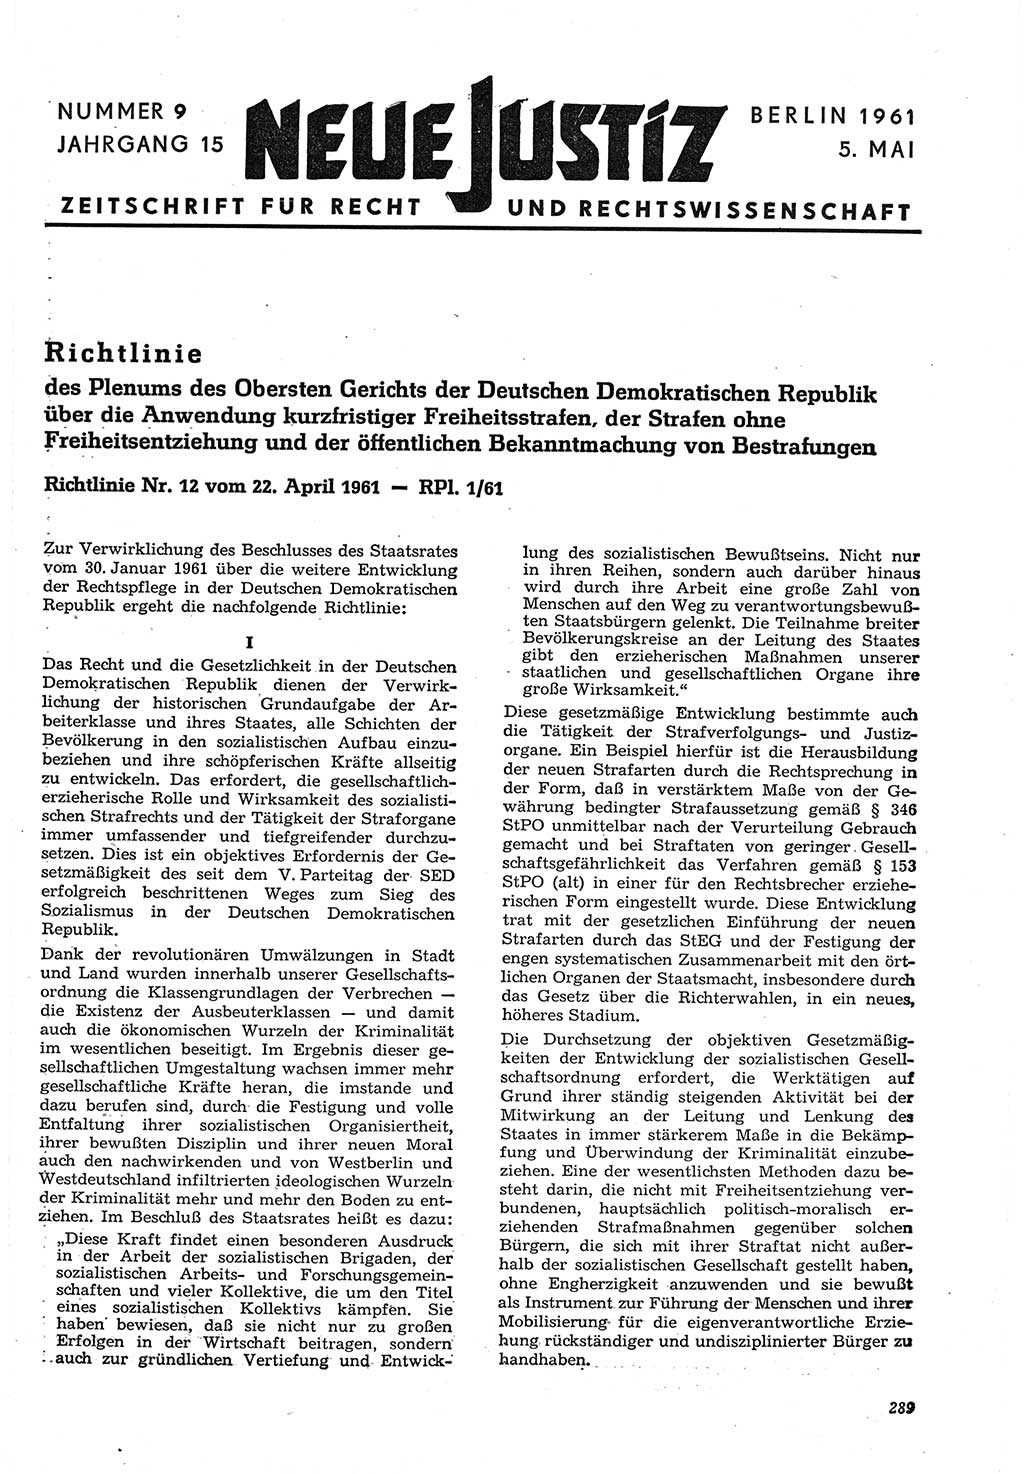 Neue Justiz (NJ), Zeitschrift für Recht und Rechtswissenschaft [Deutsche Demokratische Republik (DDR)], 15. Jahrgang 1961, Seite 289 (NJ DDR 1961, S. 289)